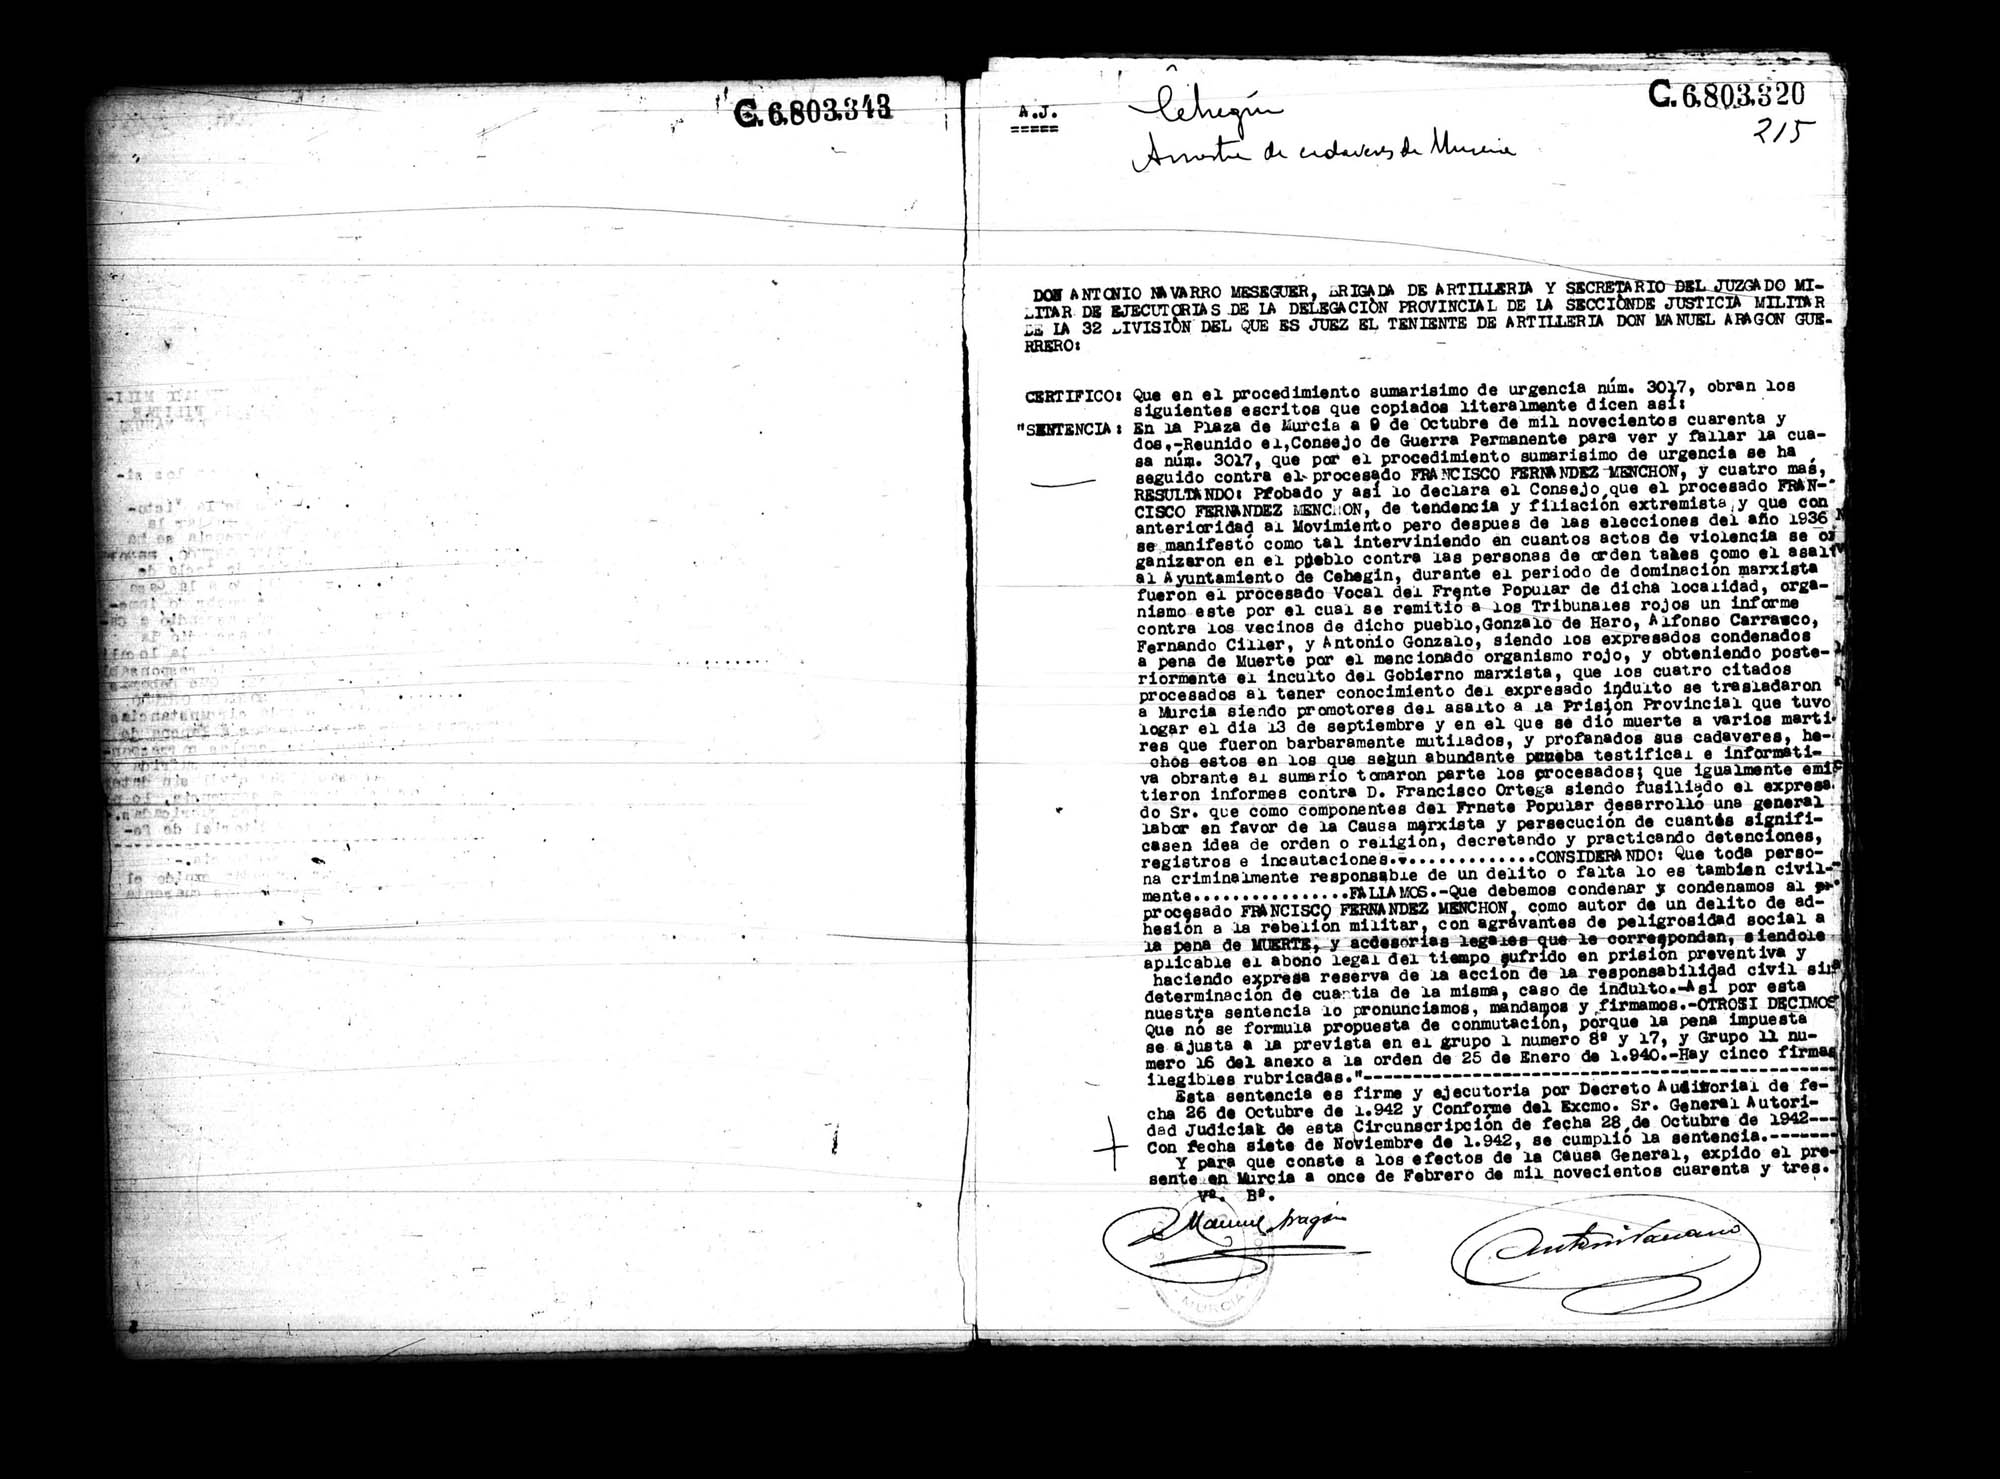 Certificado de la sentencia pronunciada contra Francisco Fernández Menchón, causa 3017, el 9 de octubre de 1942 en Murcia.